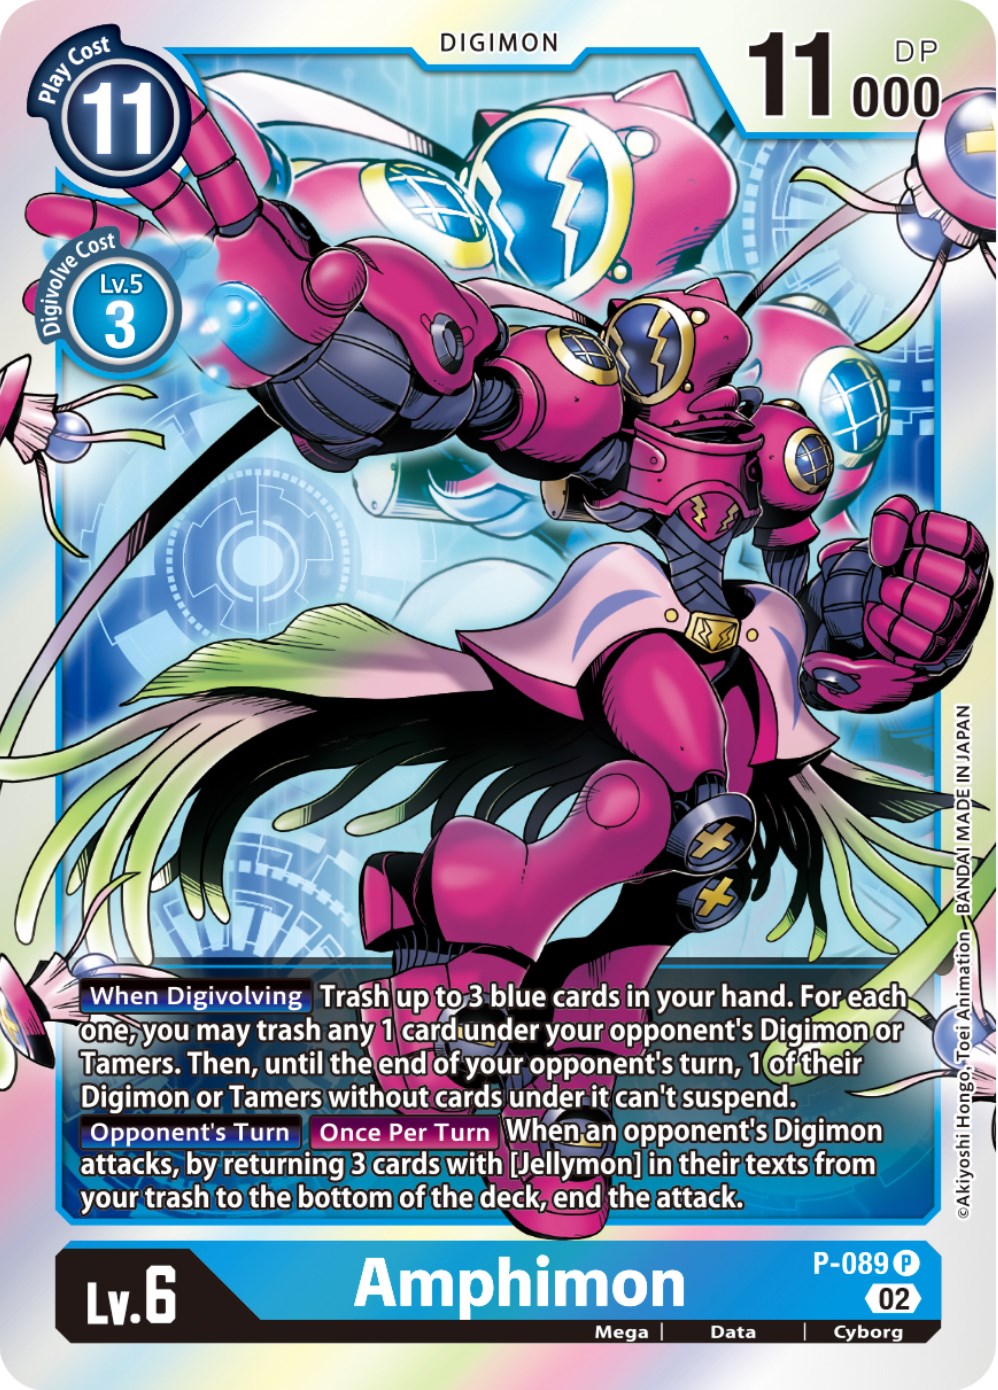 Amphimon - P-089 [P-089] [Digimon Promotion Cards] Foil